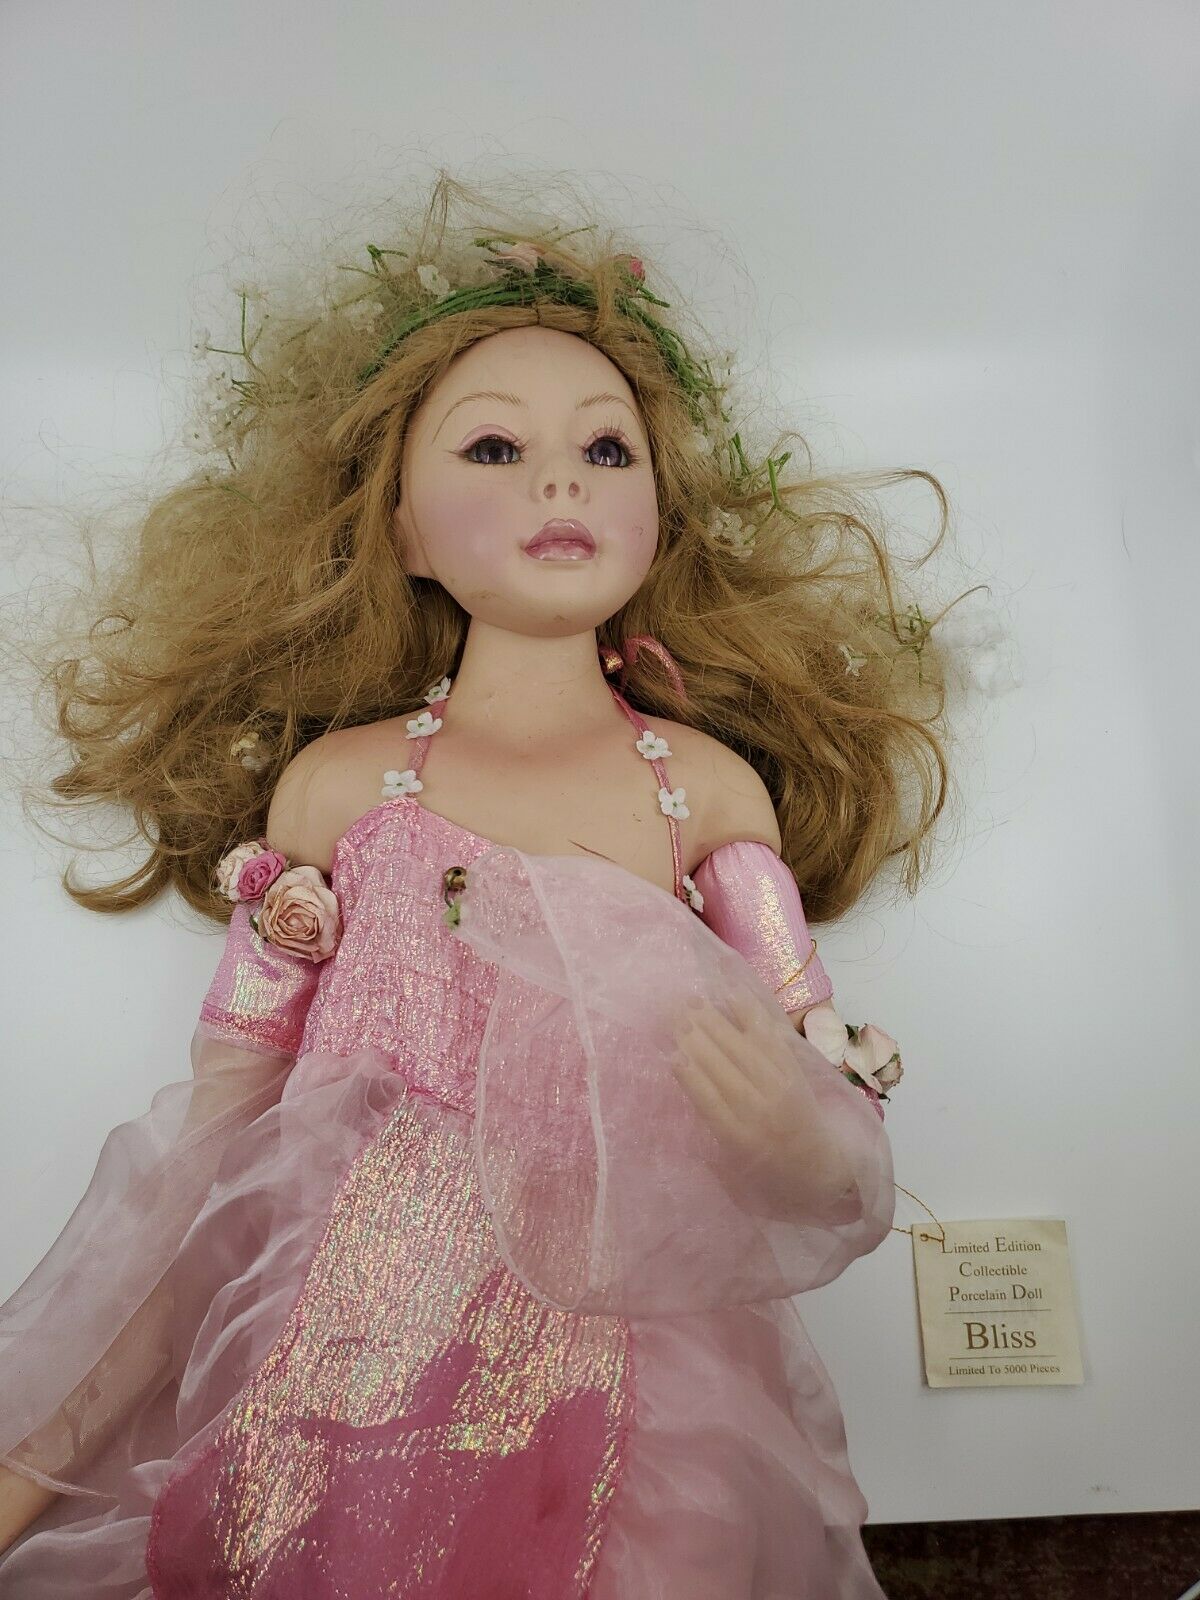 Porcelain Show Stoppers Doll Florence Maranuk 24” “bliss” New (broken Leg)